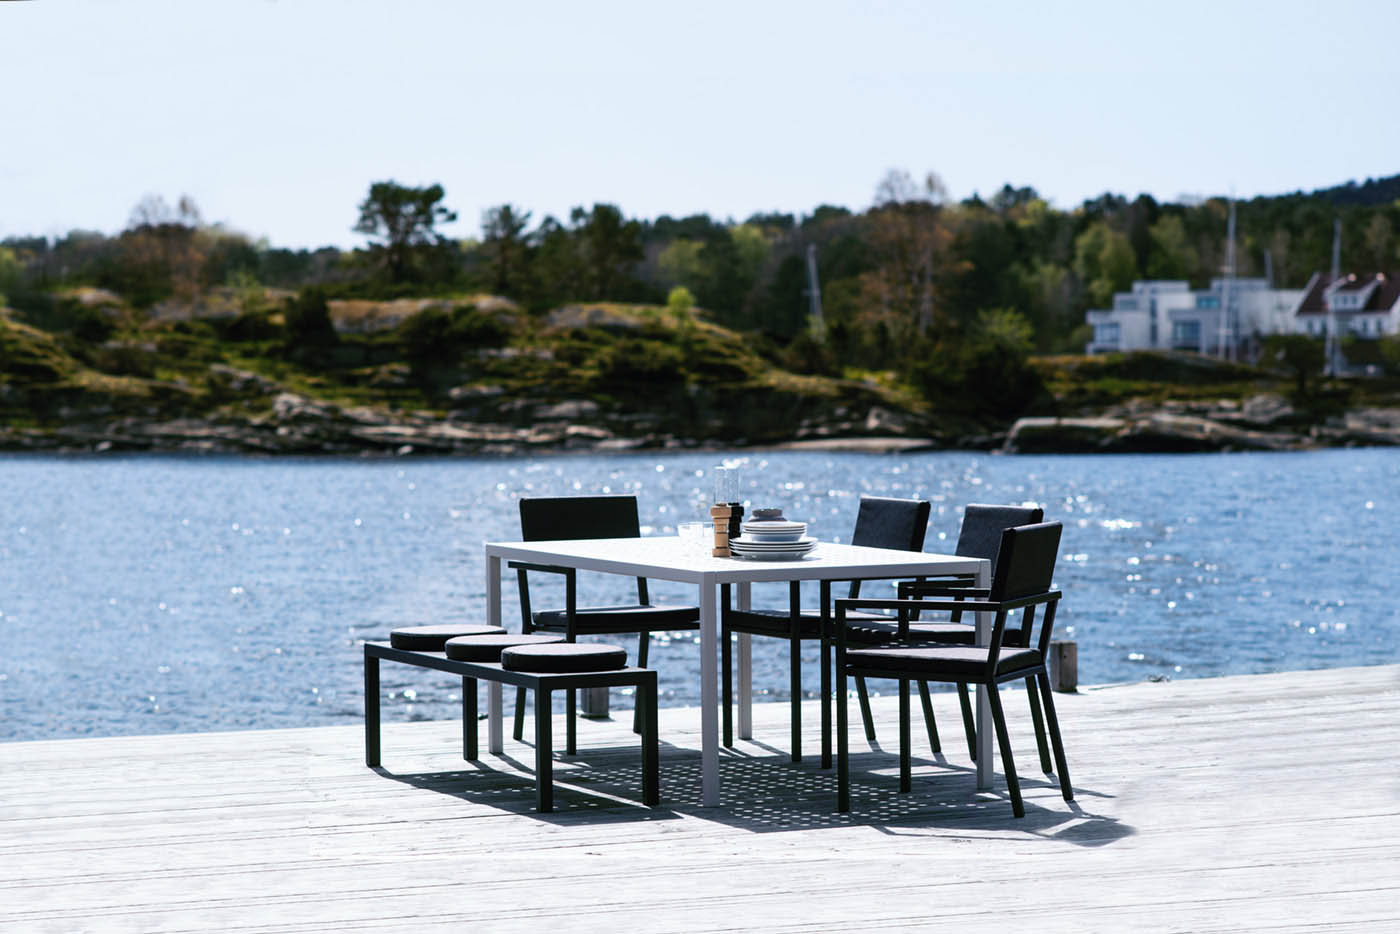 Frame spisebord fra Sundays Design hagemøbler i strålende solskinn med en glitrende sjø i bakgrunnen